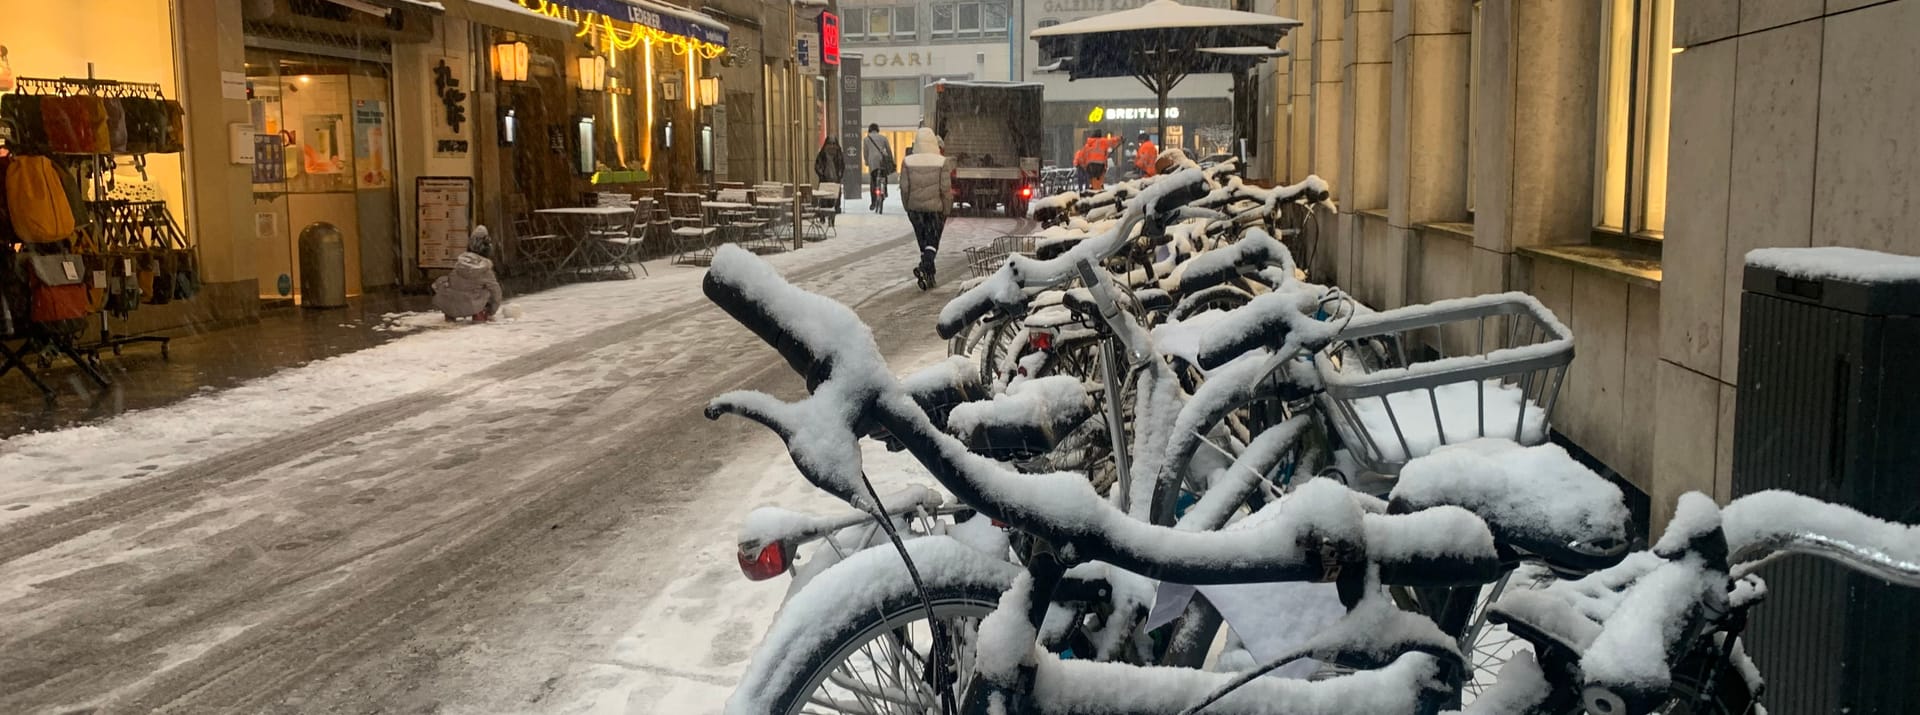 Schneebedeckte Fahrräder in der Innenstadt sind heute keine Seltenheit.